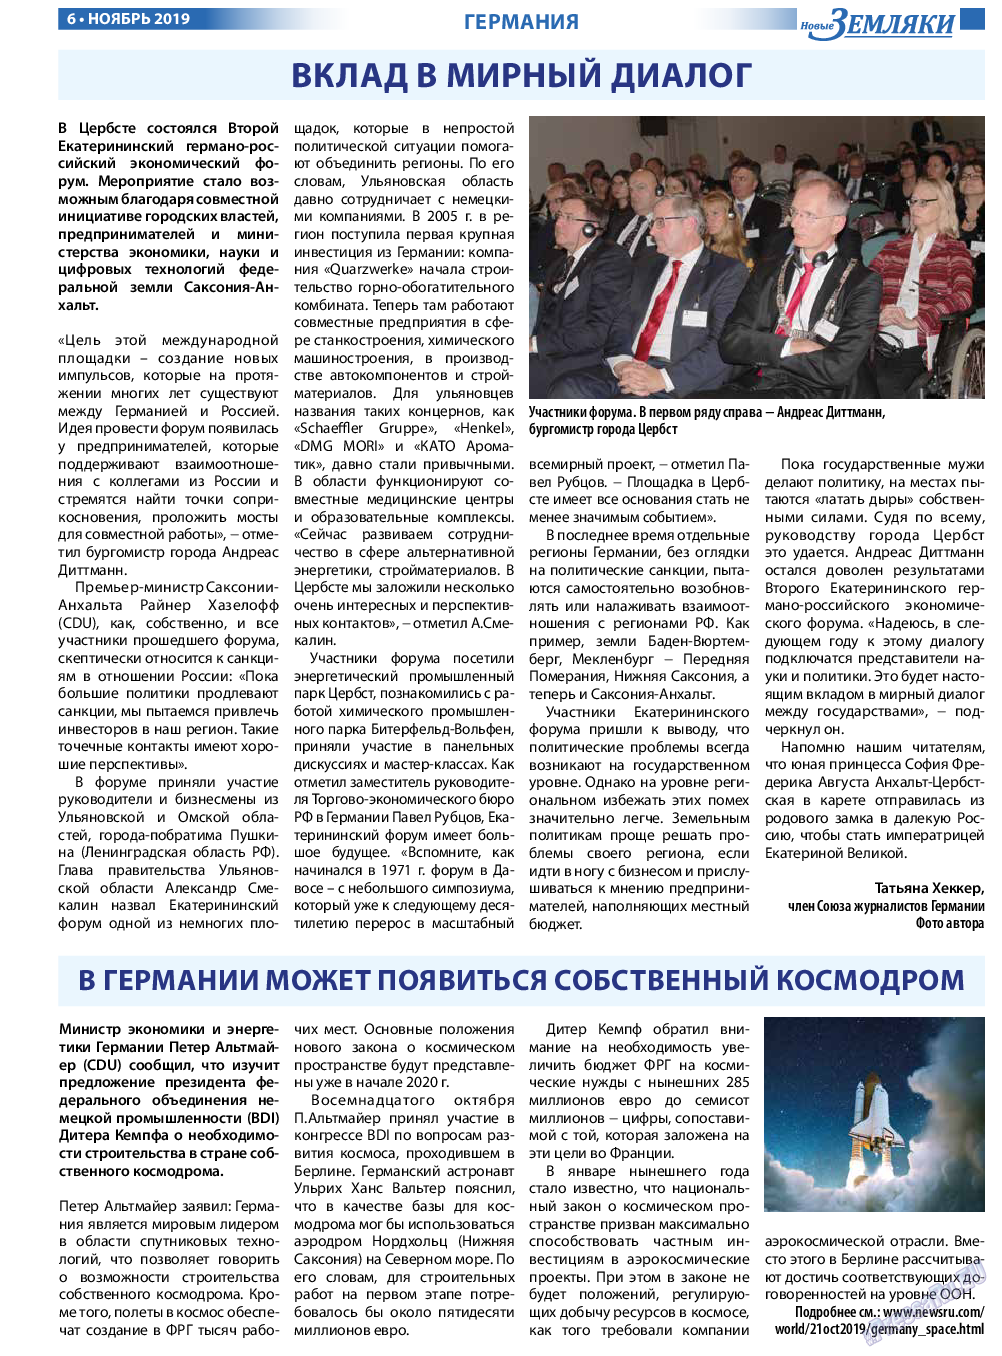 Новые Земляки, газета. 2019 №11 стр.6